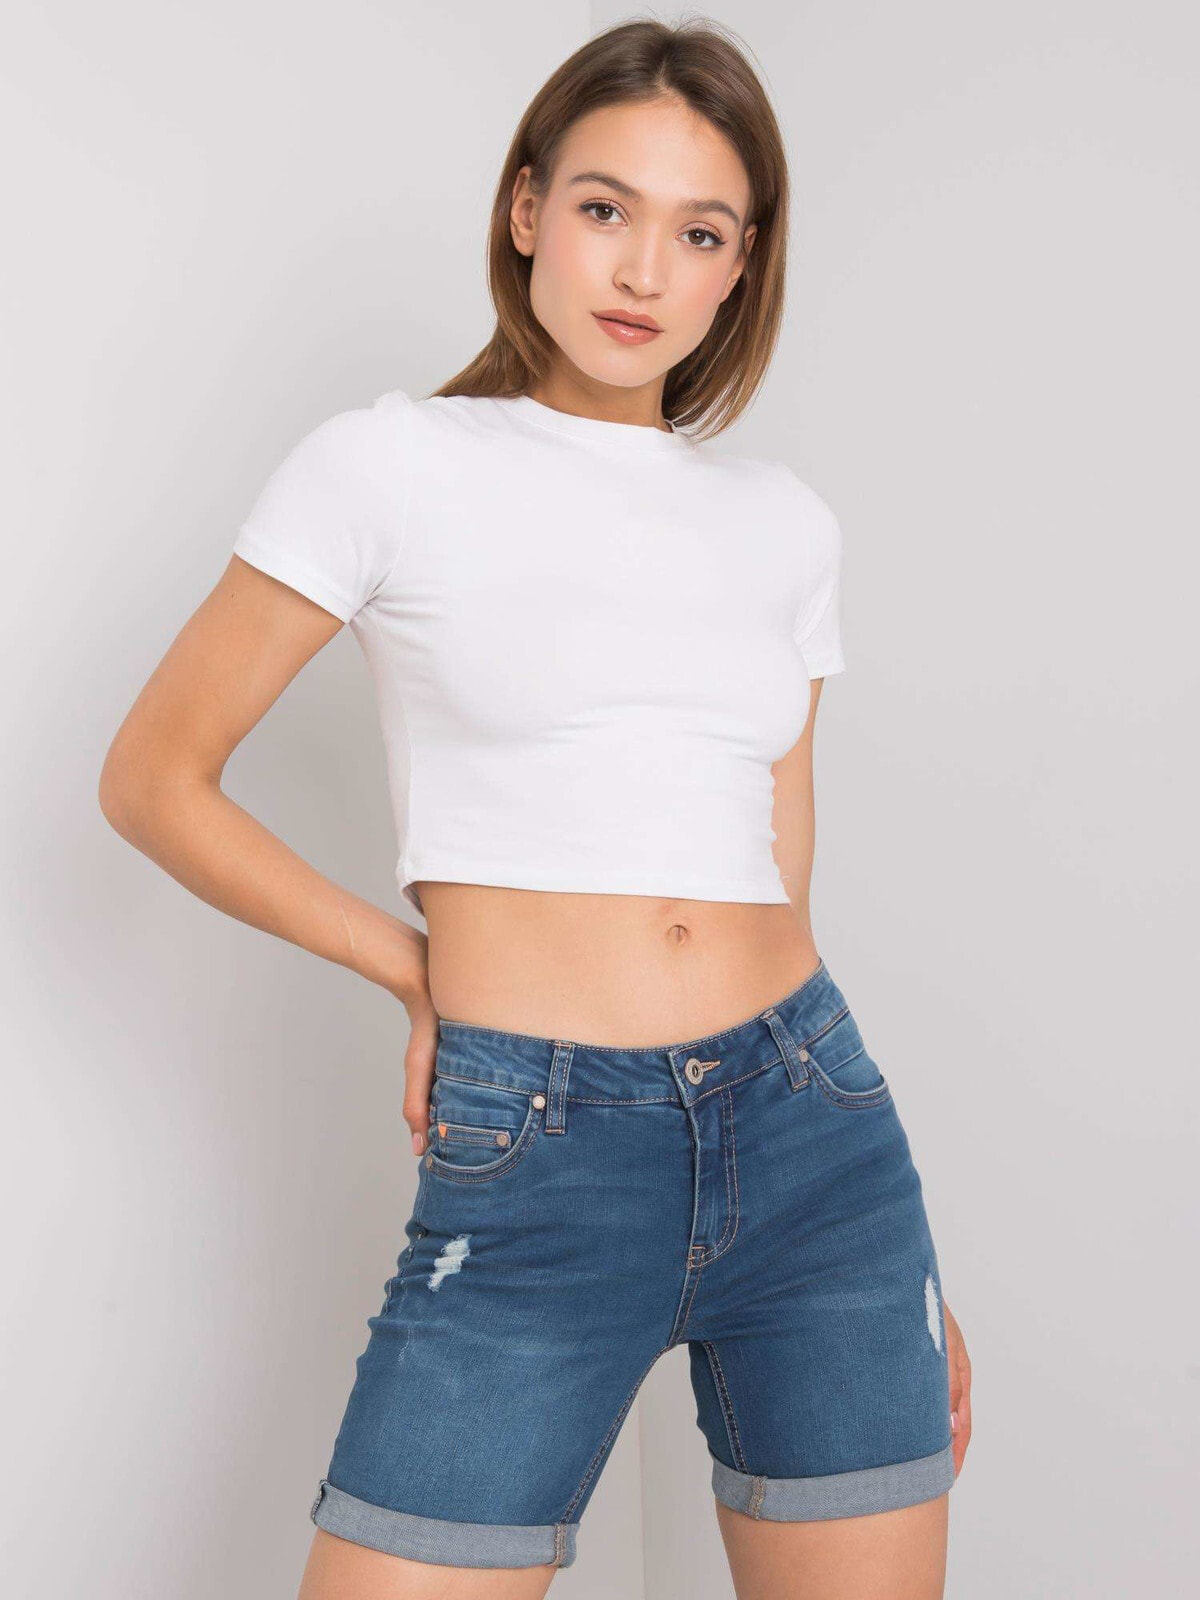 Женские джинсовые шорты  Factory Price  с высокой талией, логотип, пять карманов, подол с подворотом